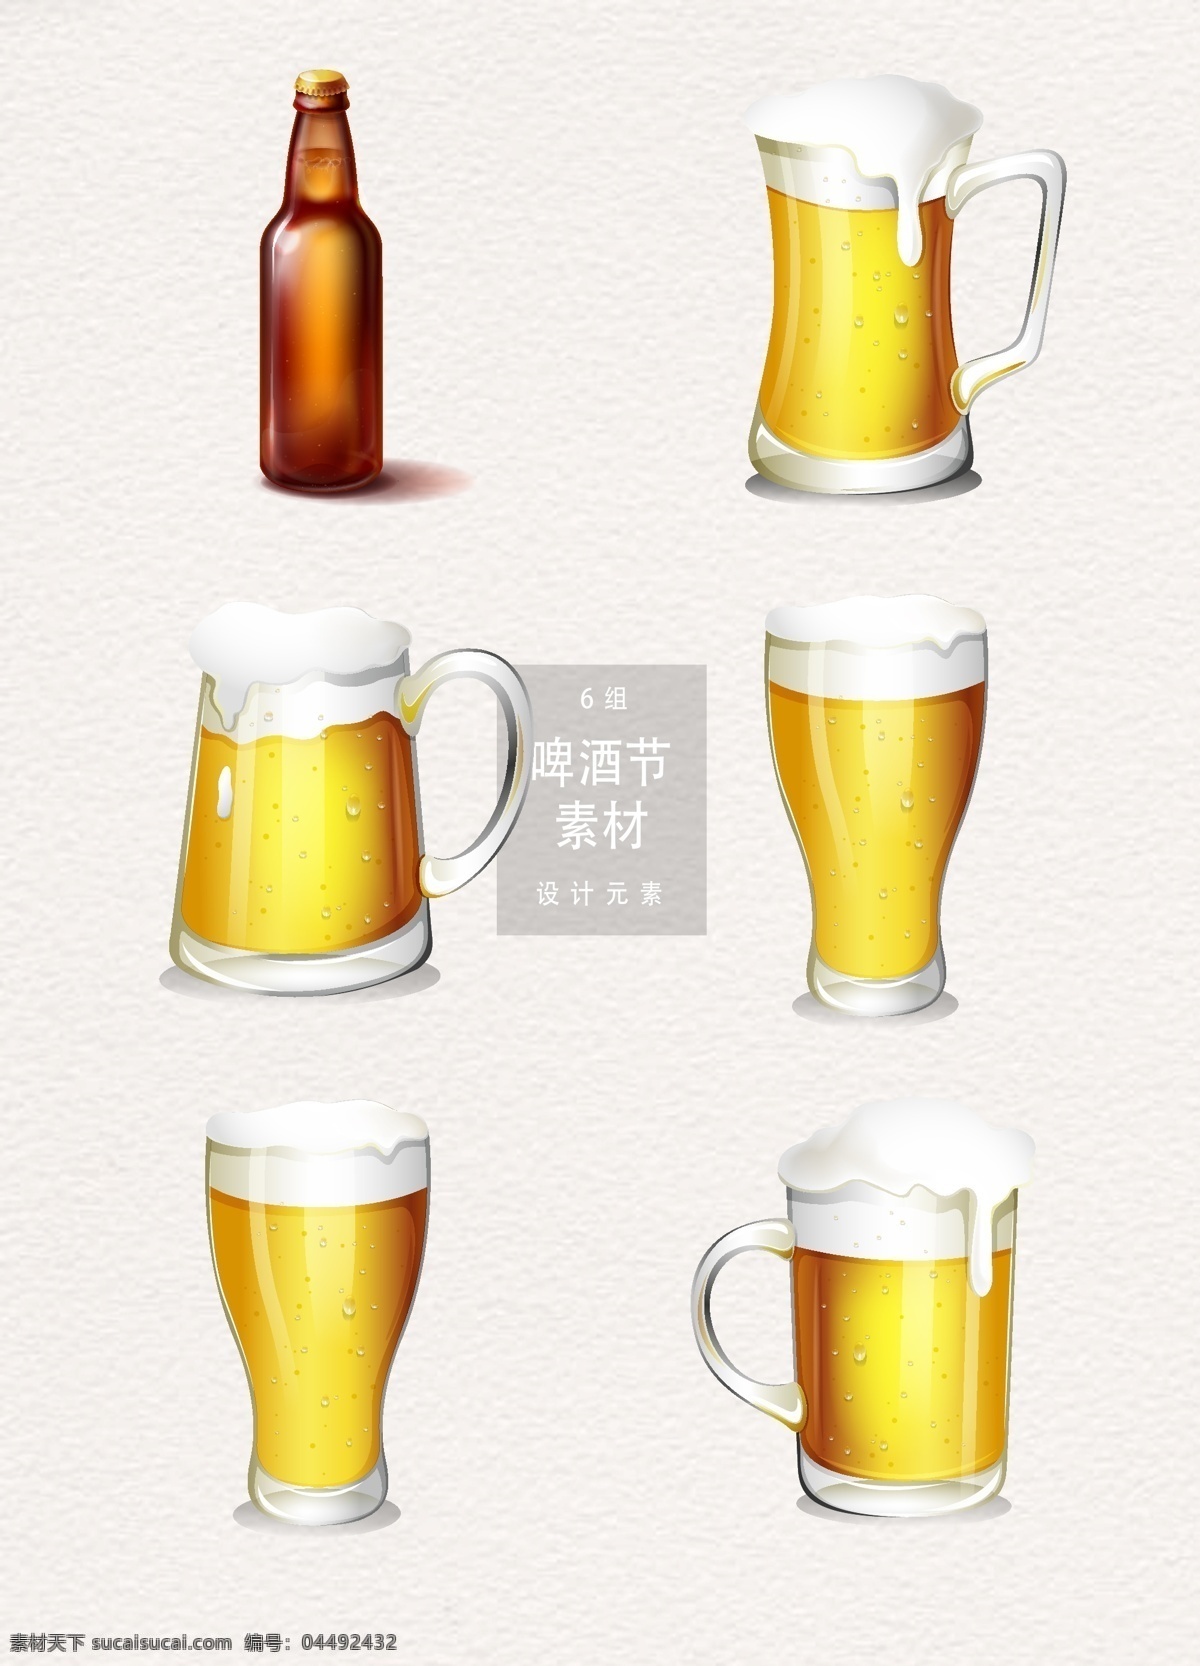 国际 啤酒节 元素 啤酒 矢量素材 手绘插画 饮料 冷饮 手绘啤酒 啤酒矢量 青岛 节庆 啤酒插画 手绘饮料